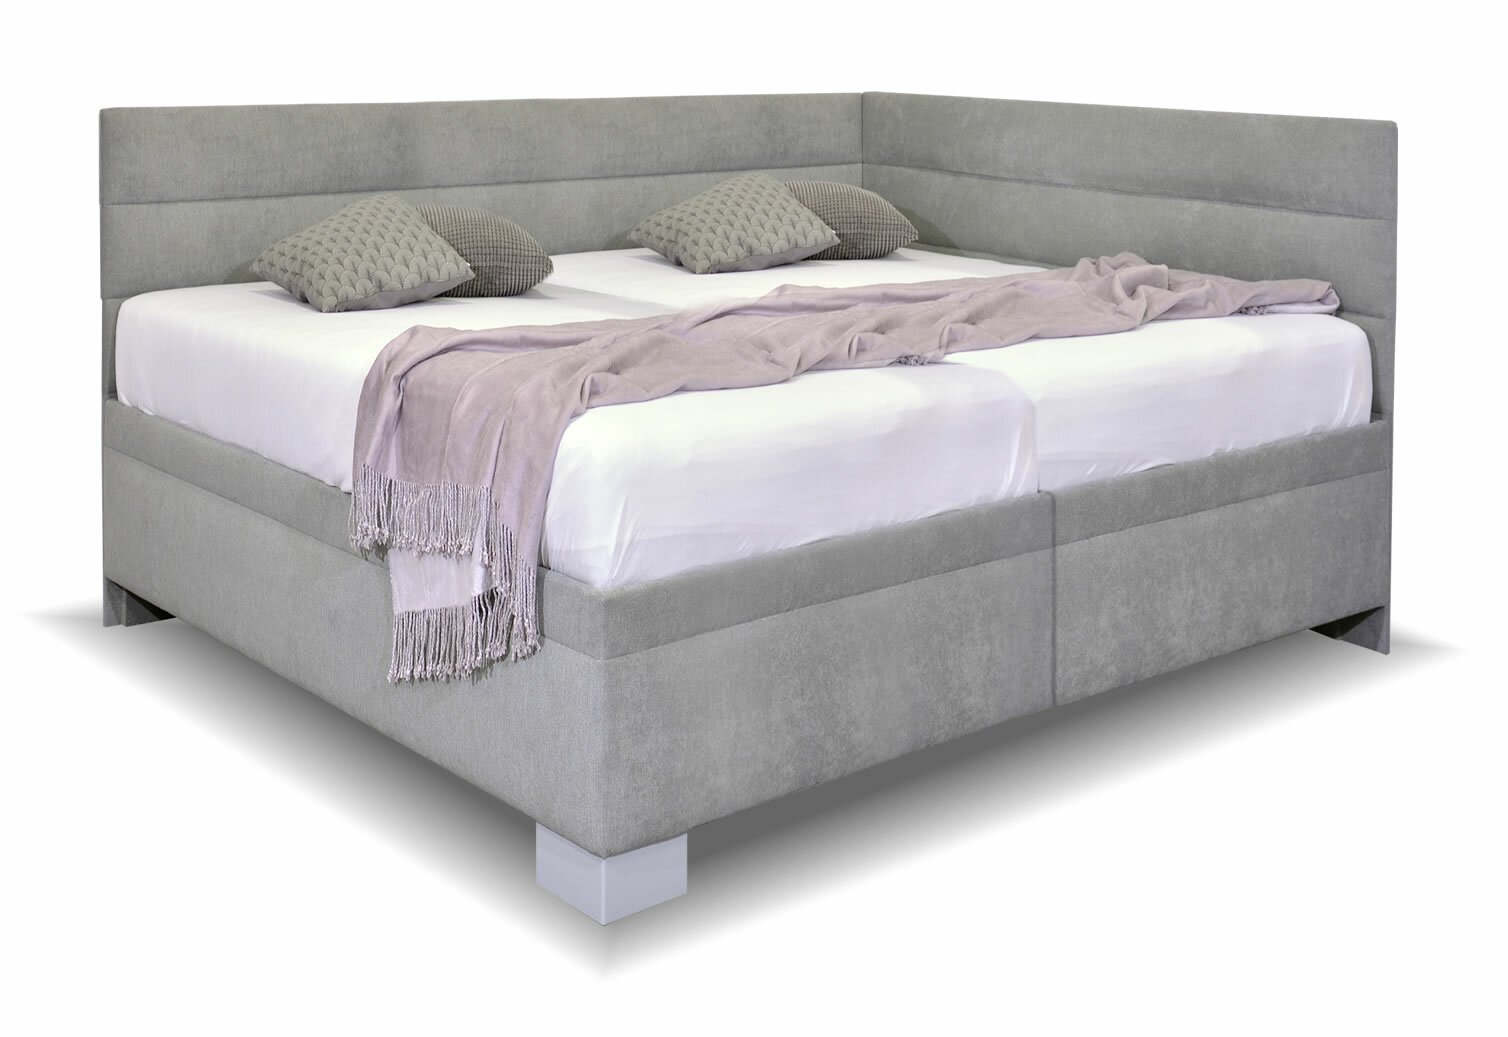 Rohová čalouněná postel Niobe, s úložným prostorem, 180x200 cm